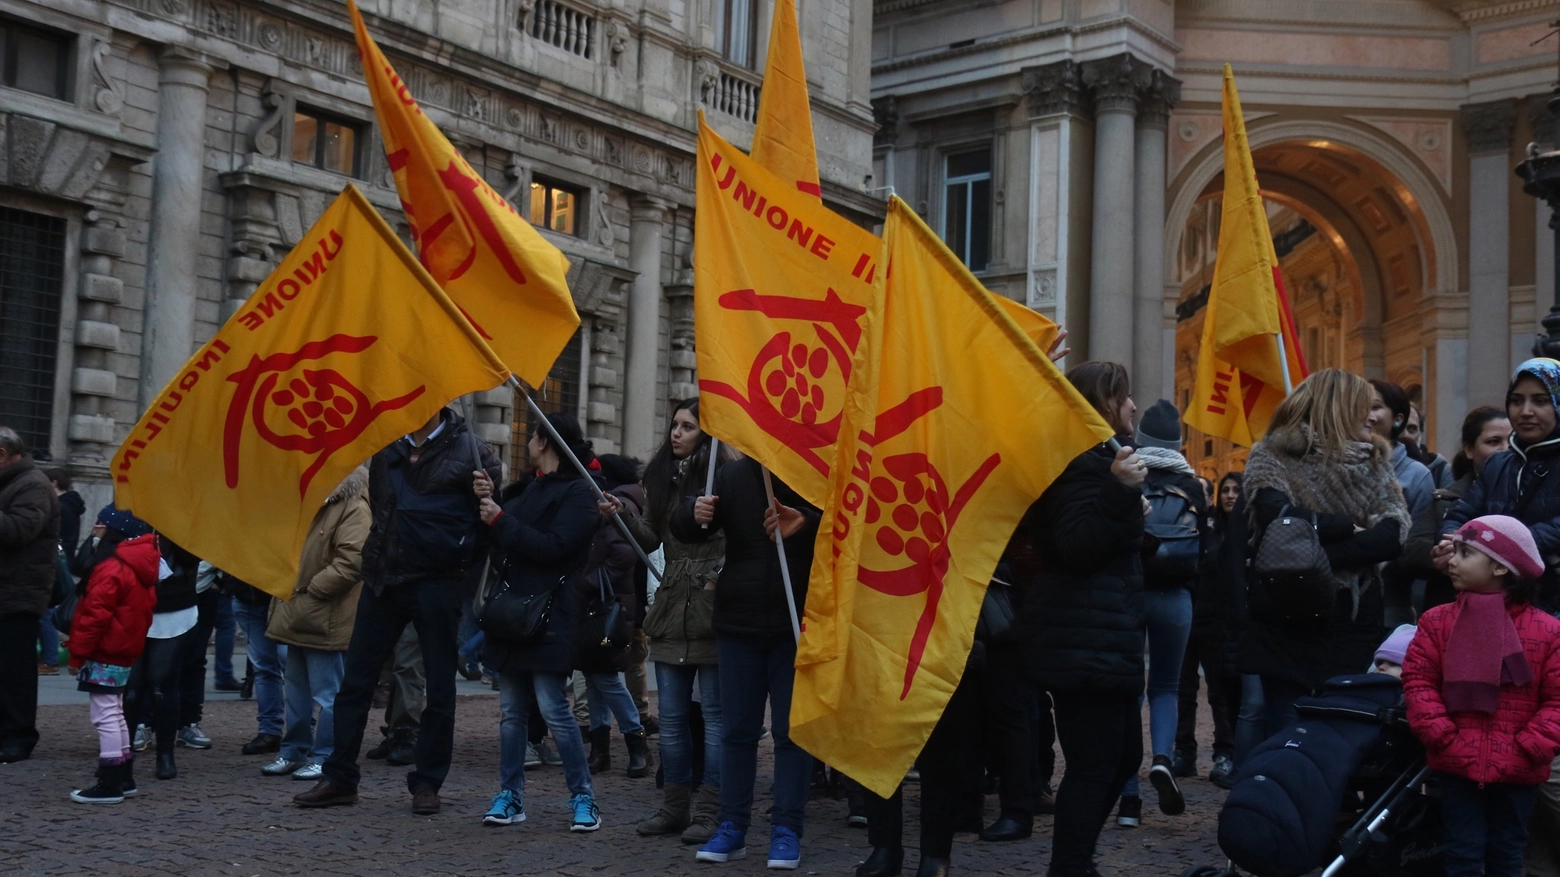 La protesta in piazza Scala (Newpress)